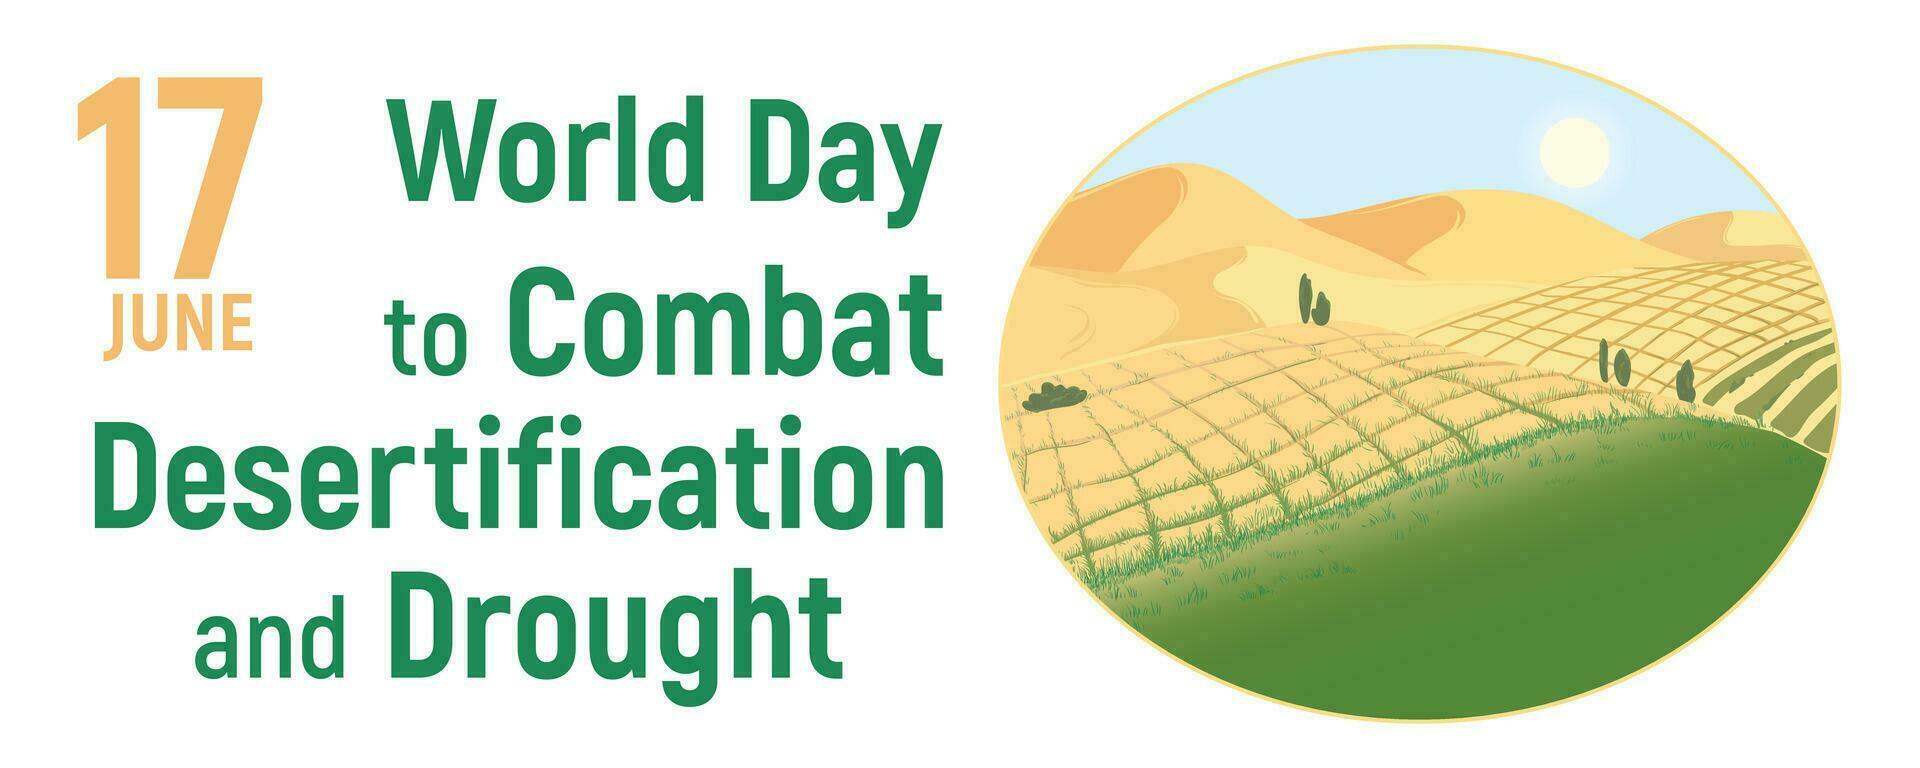 junio 17 - mundo día a combate desertificación y sequía. vector ilustración.